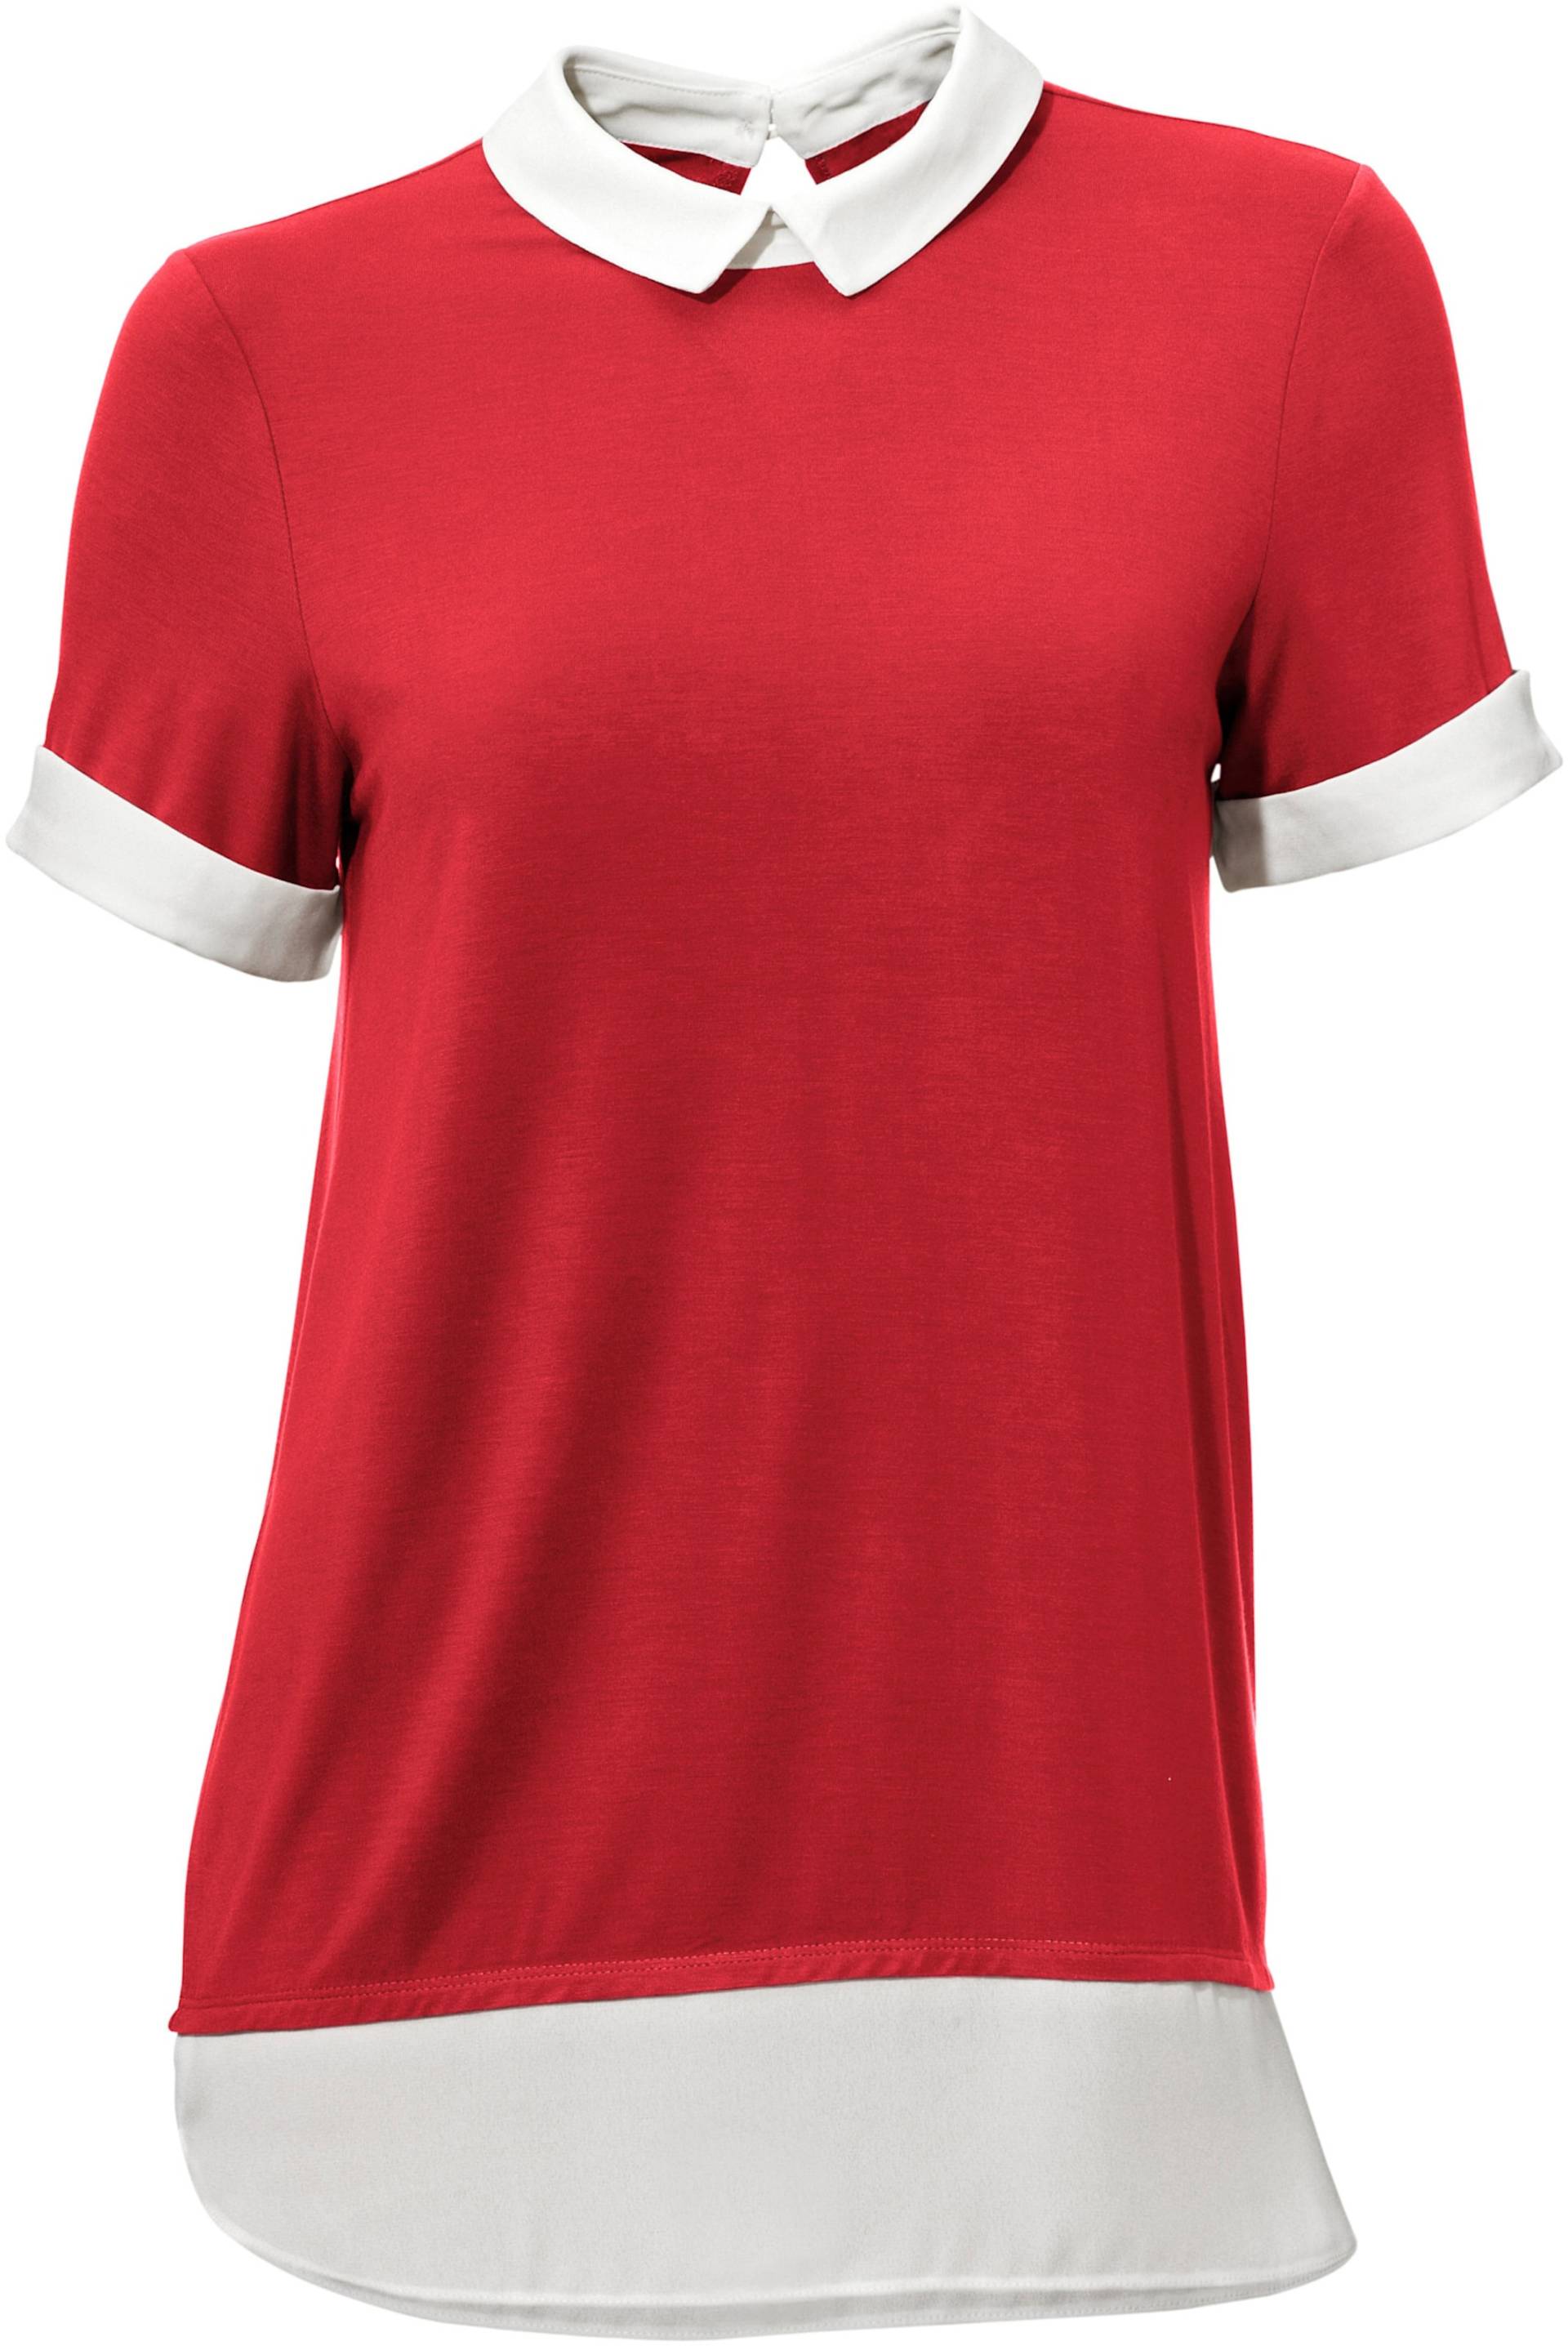 Rundhals-Shirt in rot von heine